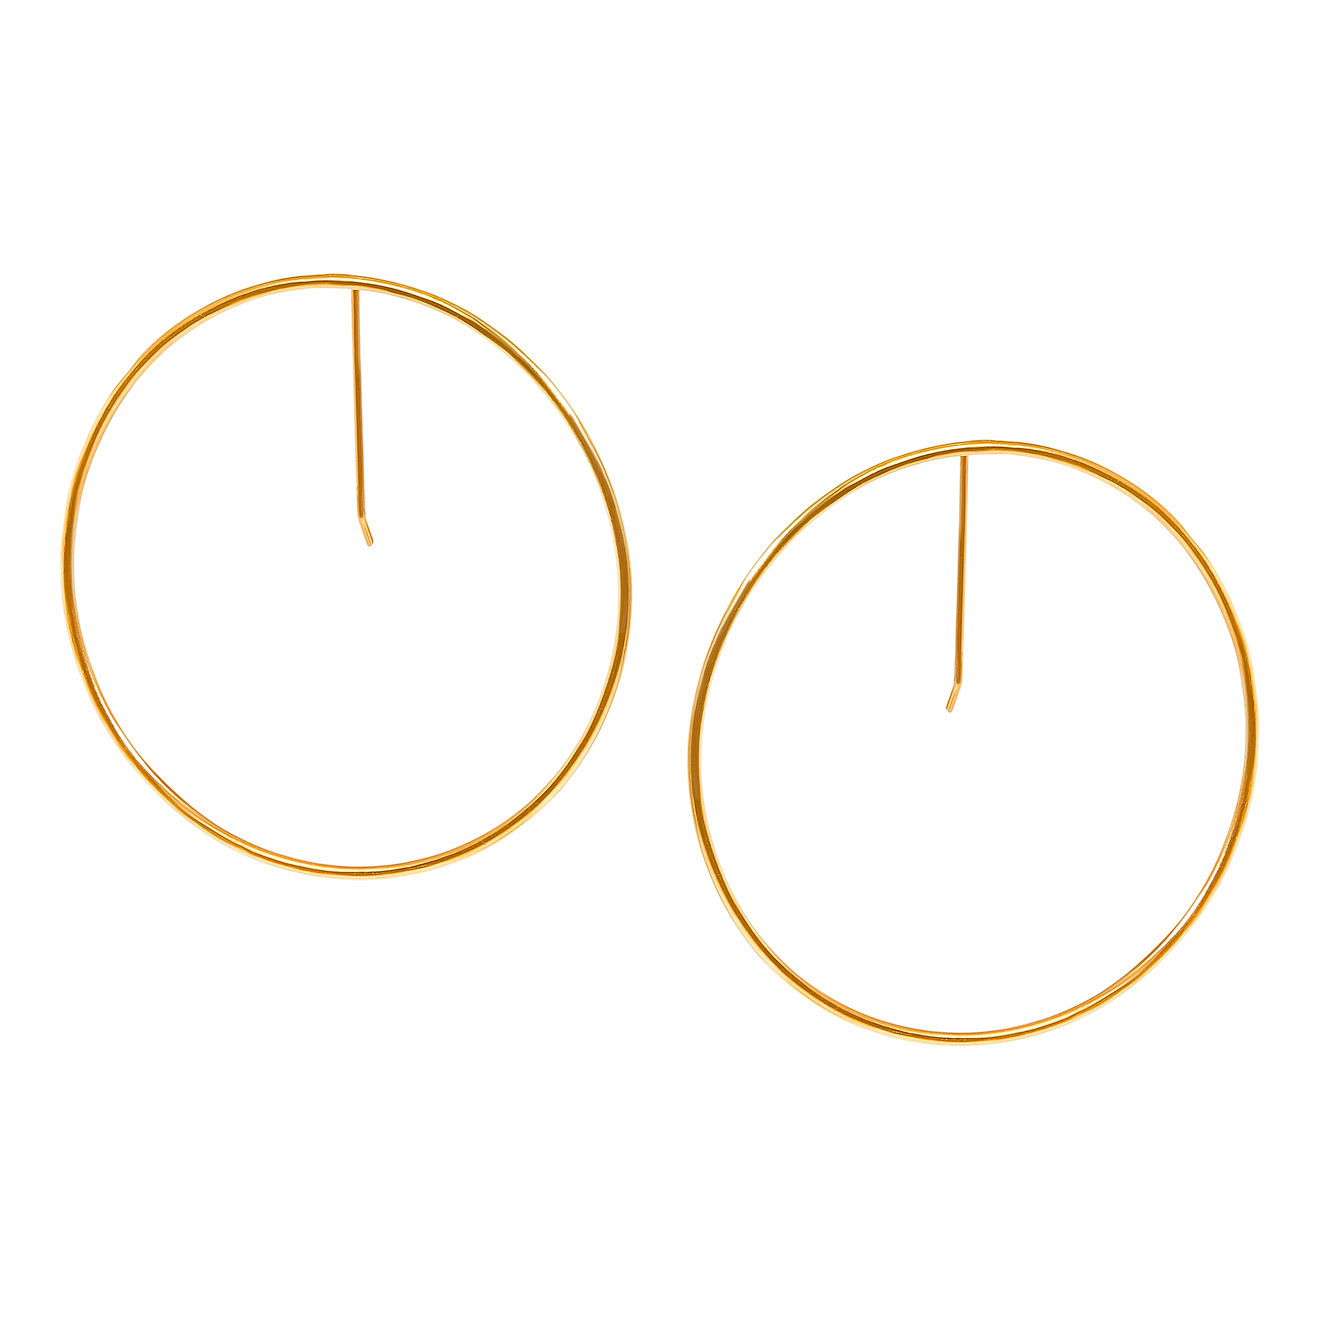 khoshtrik маленькие позолоченные серьги круги из серебра Khoshtrik Большие позолоченные серьги-круги